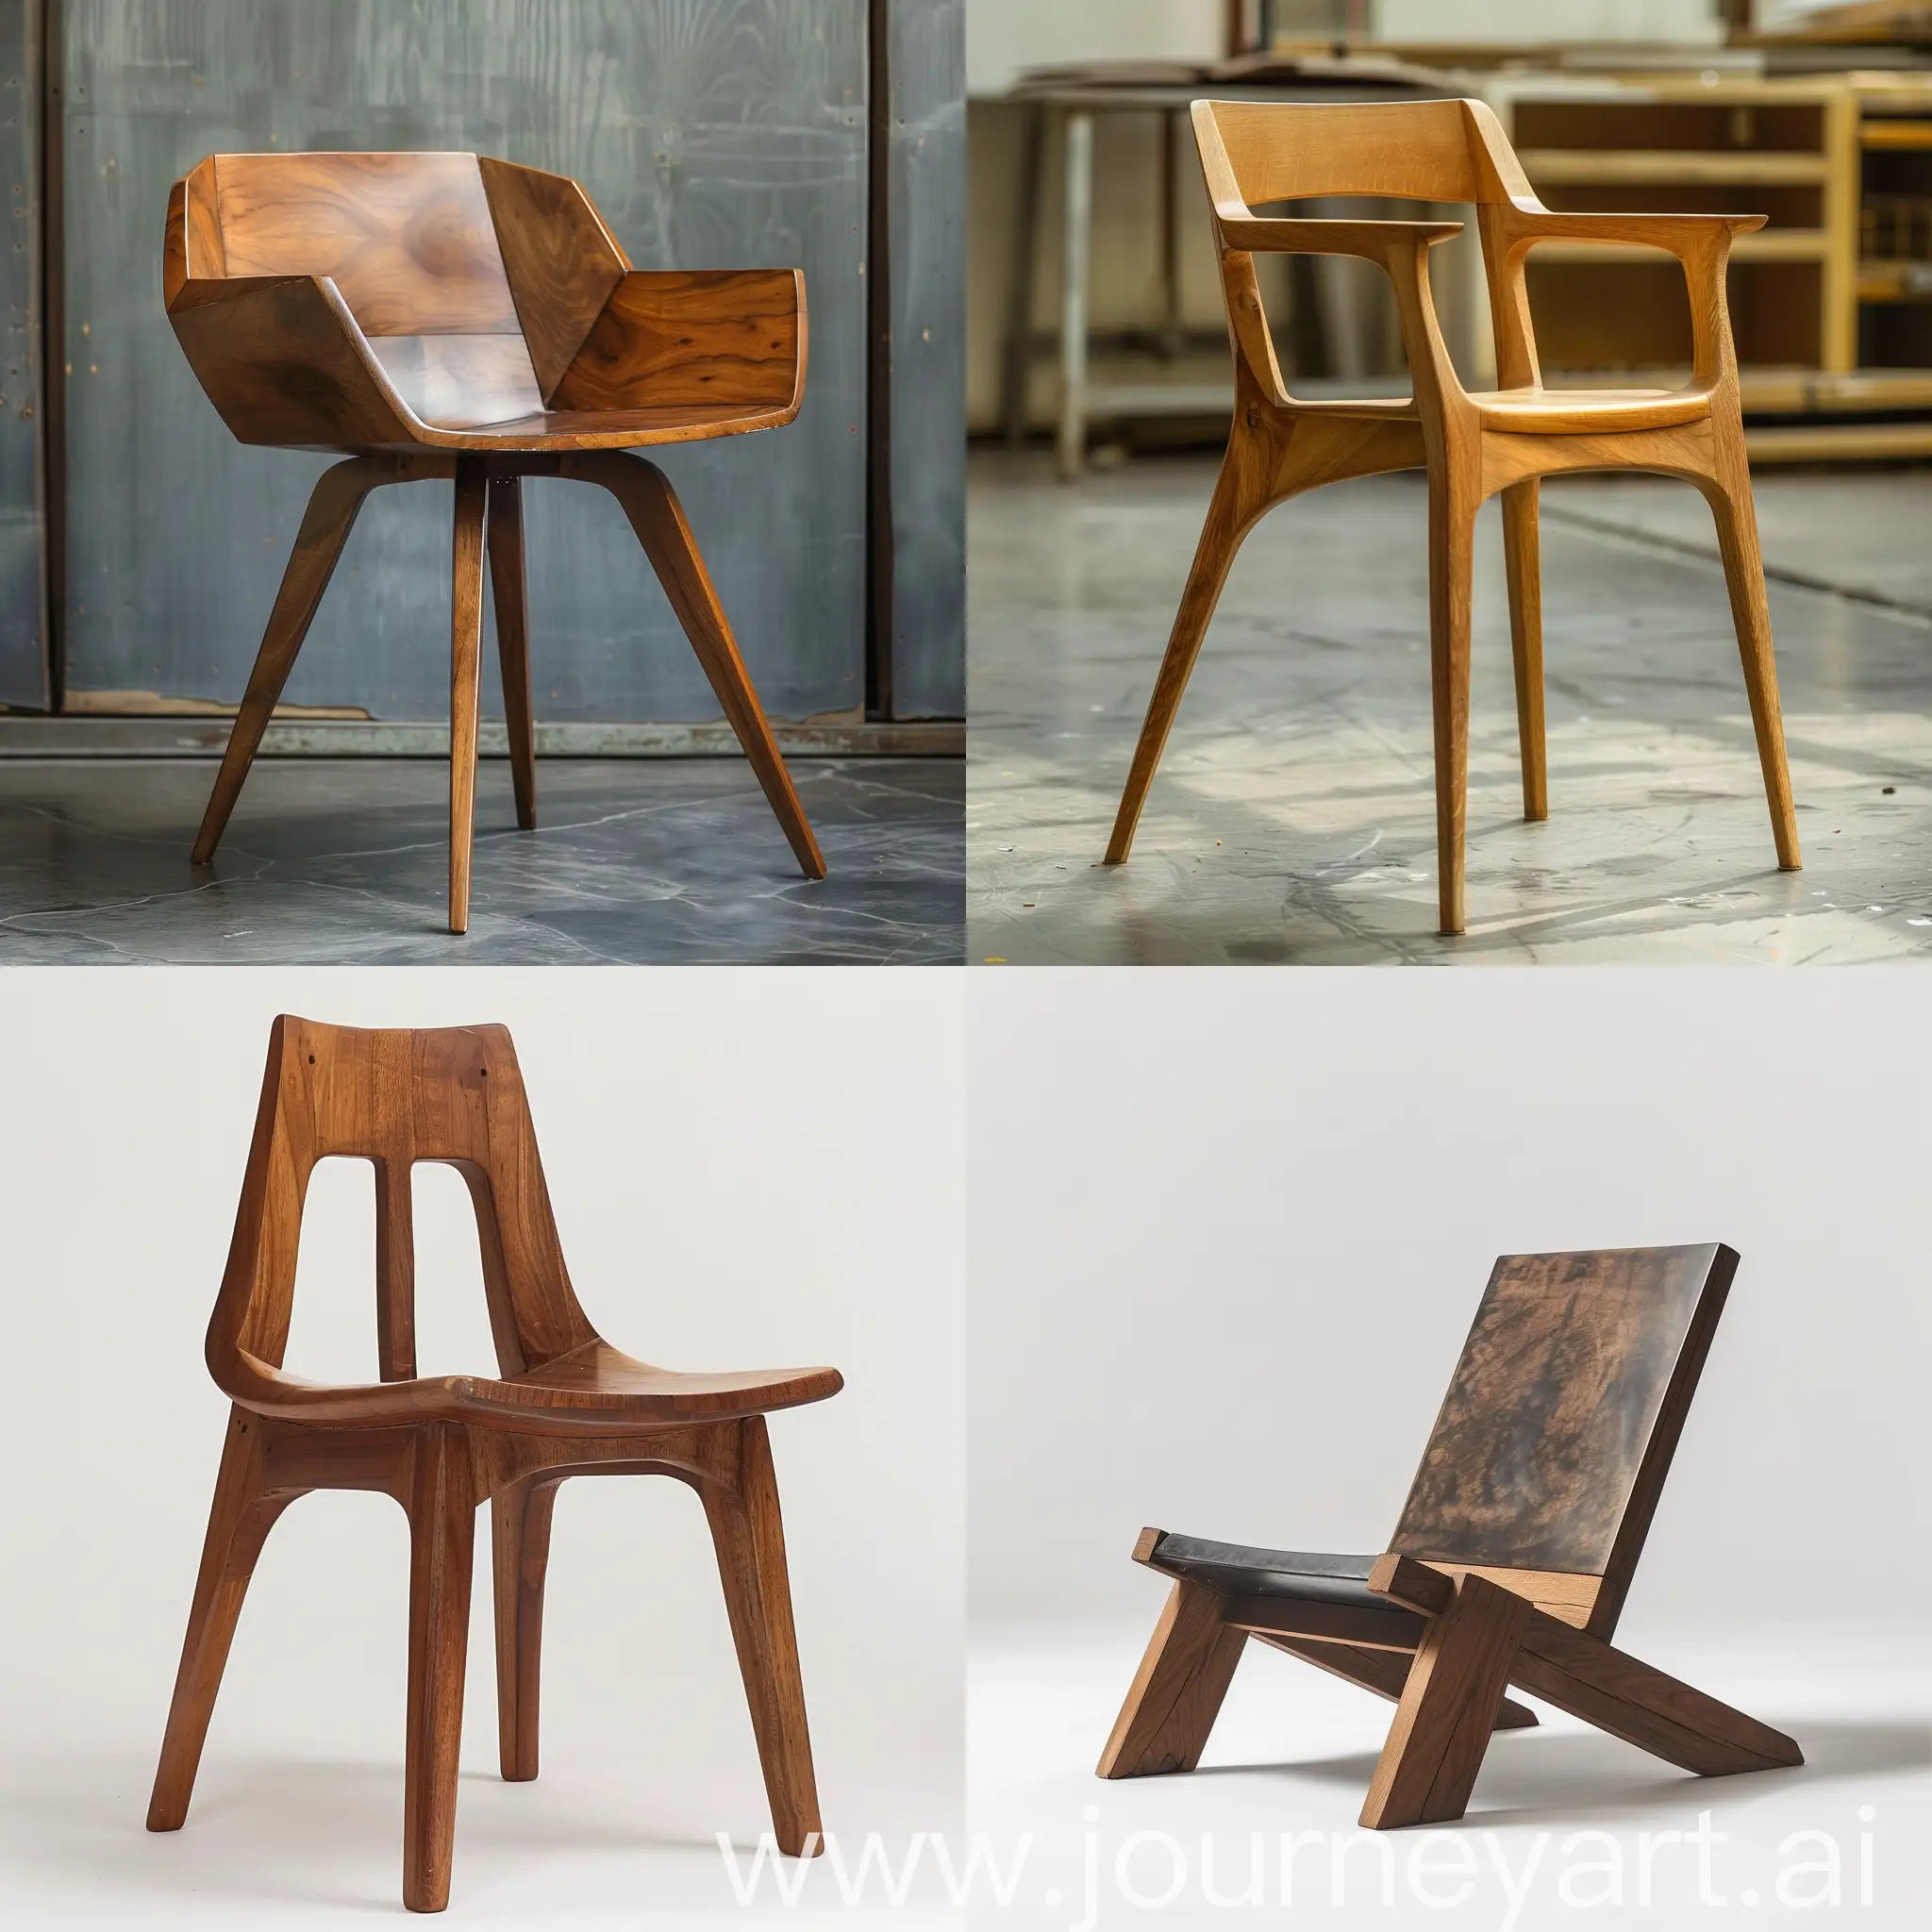 Design an iranian moder minimal wooden chair